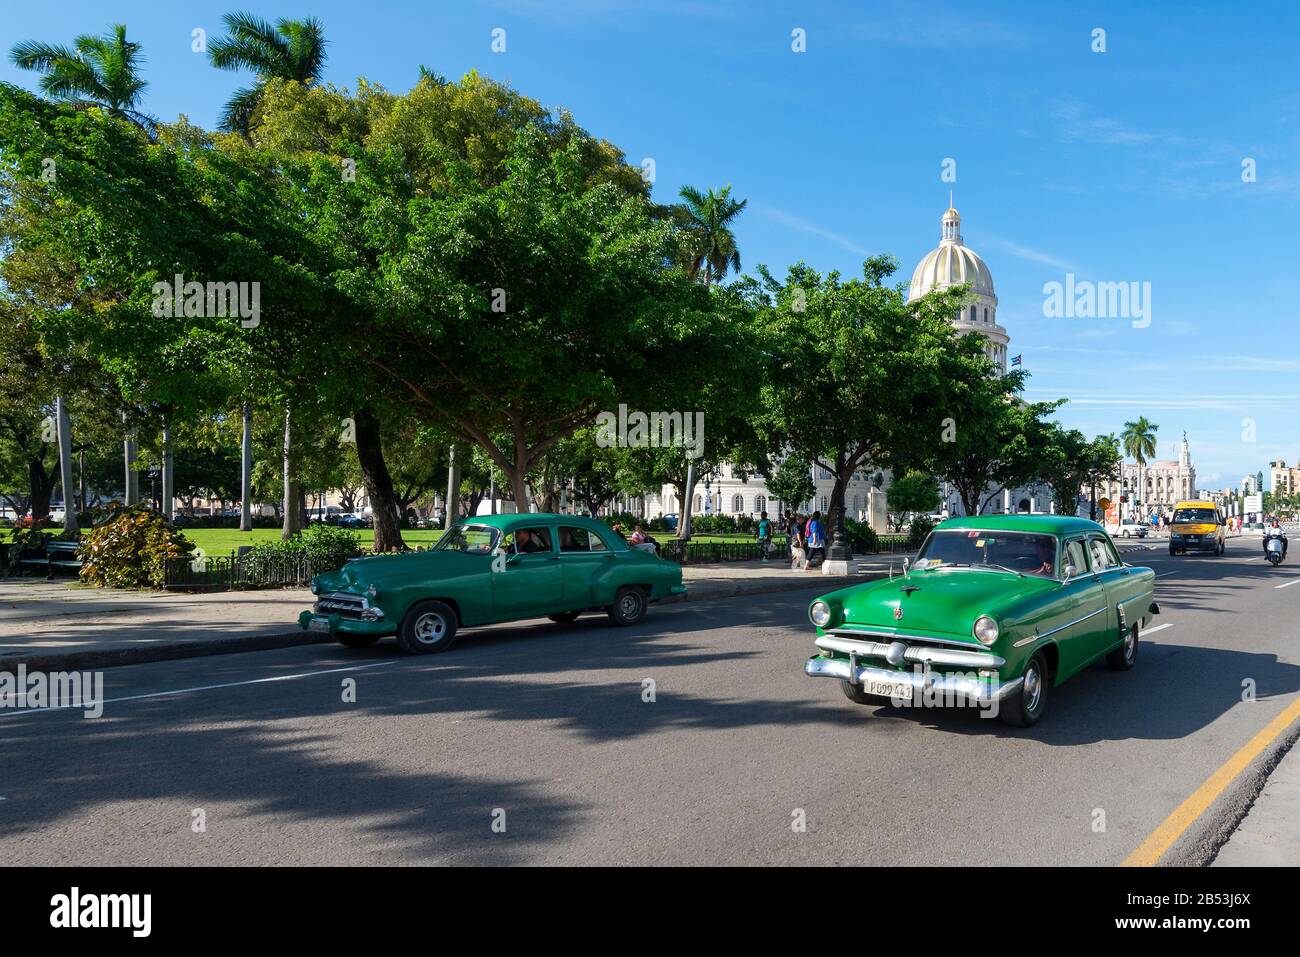 Zwei Oldtimer vor dem American Fraternity Park in Havanna, Kuba. Das Gebäude des Gouverneurs ist bekannt, da El Capitolio dahinter zu sehen ist. Stockfoto